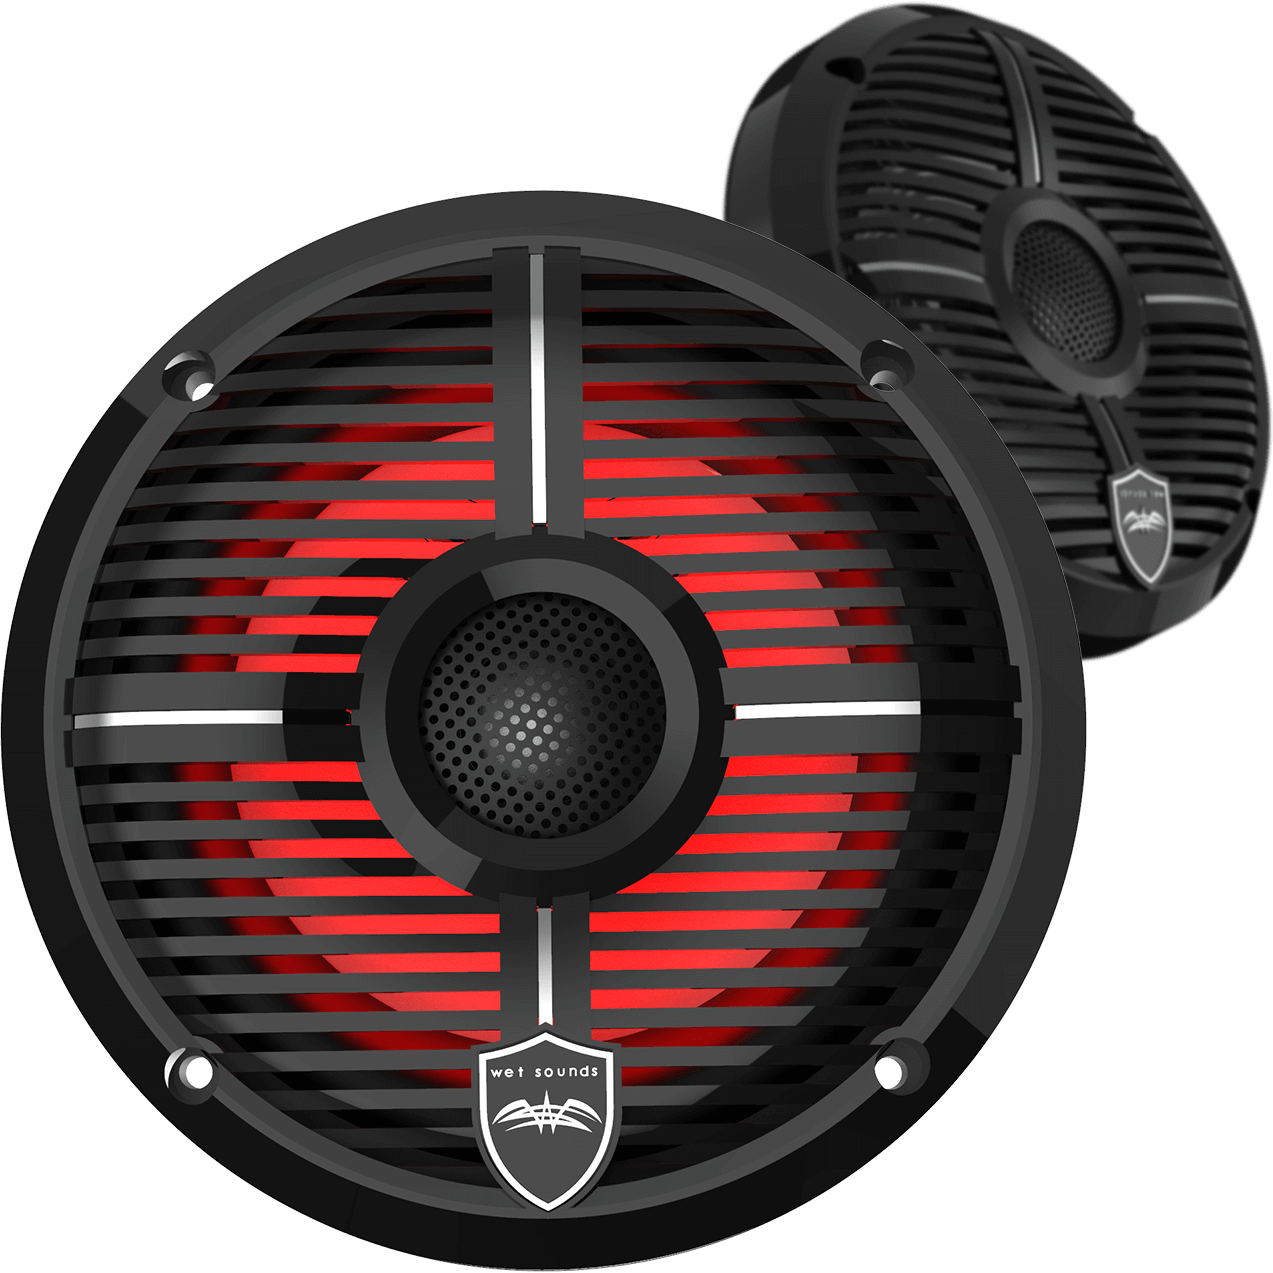 REVO 6 Marine Coaxial Speakers (Pair) - Kombustion Motorsports